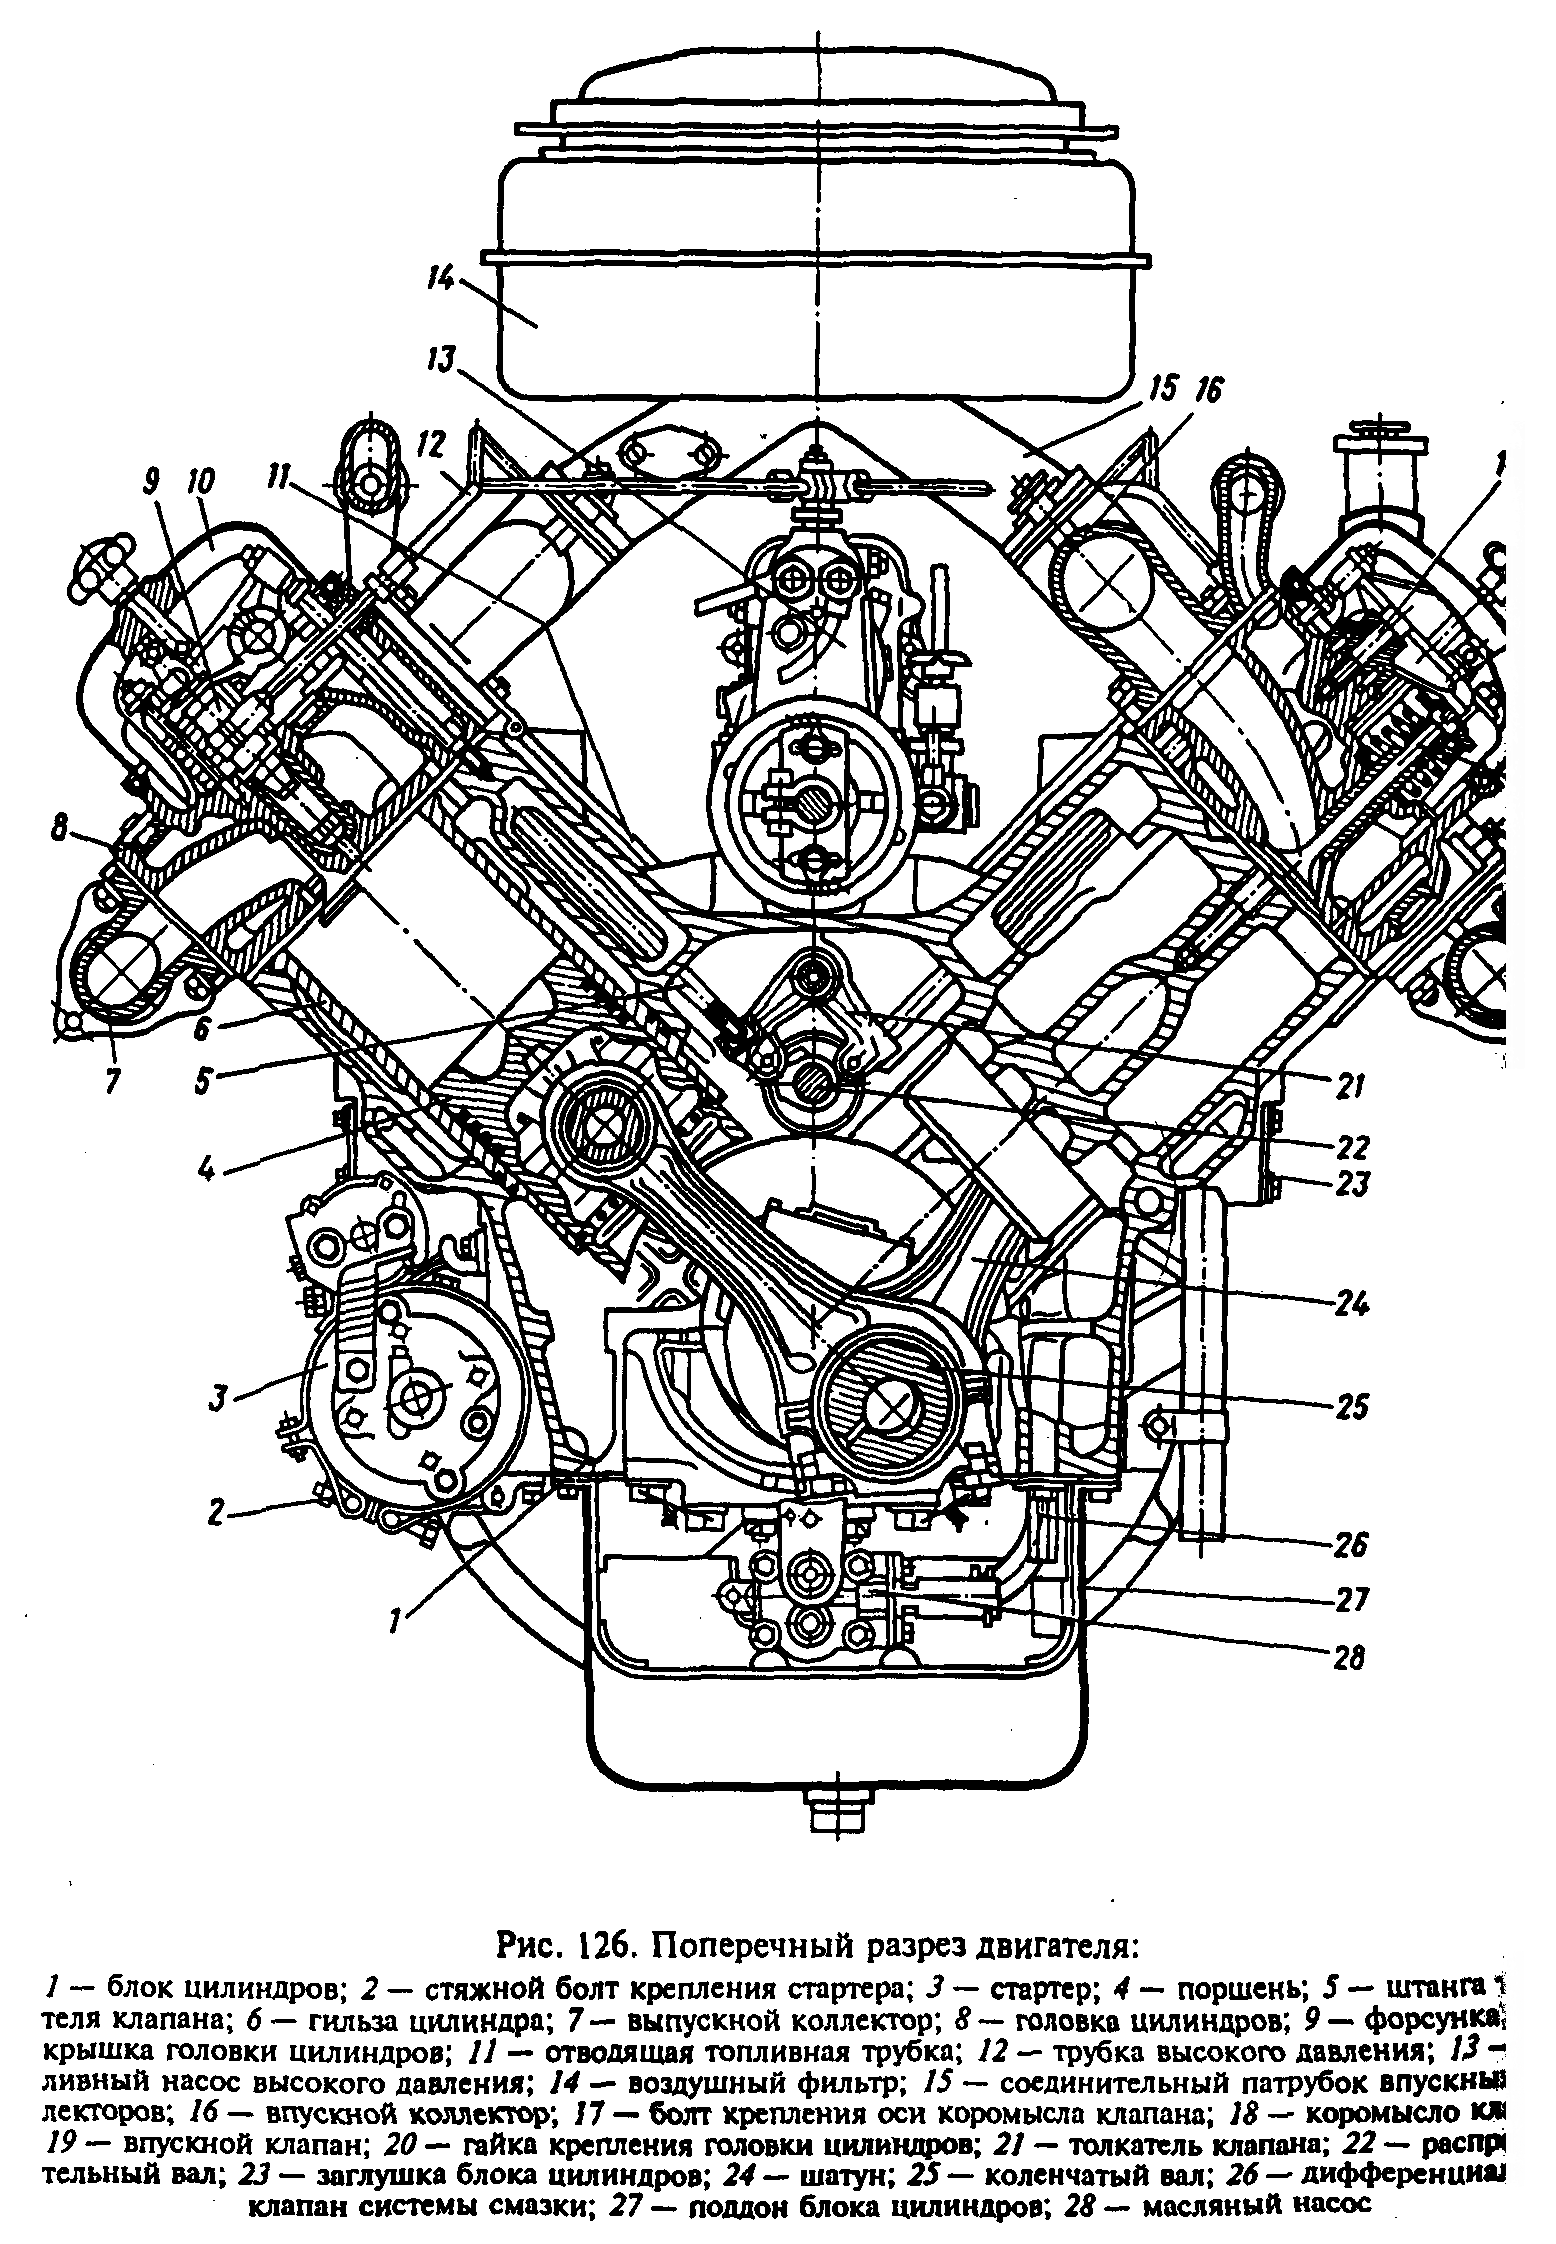 Ремонт двигателя 236. Блок цилиндров двигателя ЯМЗ 236 чертеж. Устройство дизельного двигателя ЯМЗ 236. Двигатель ЯМЗ 236 В разрезе. Двигатель ЯМЗ 238м2 чертеж.